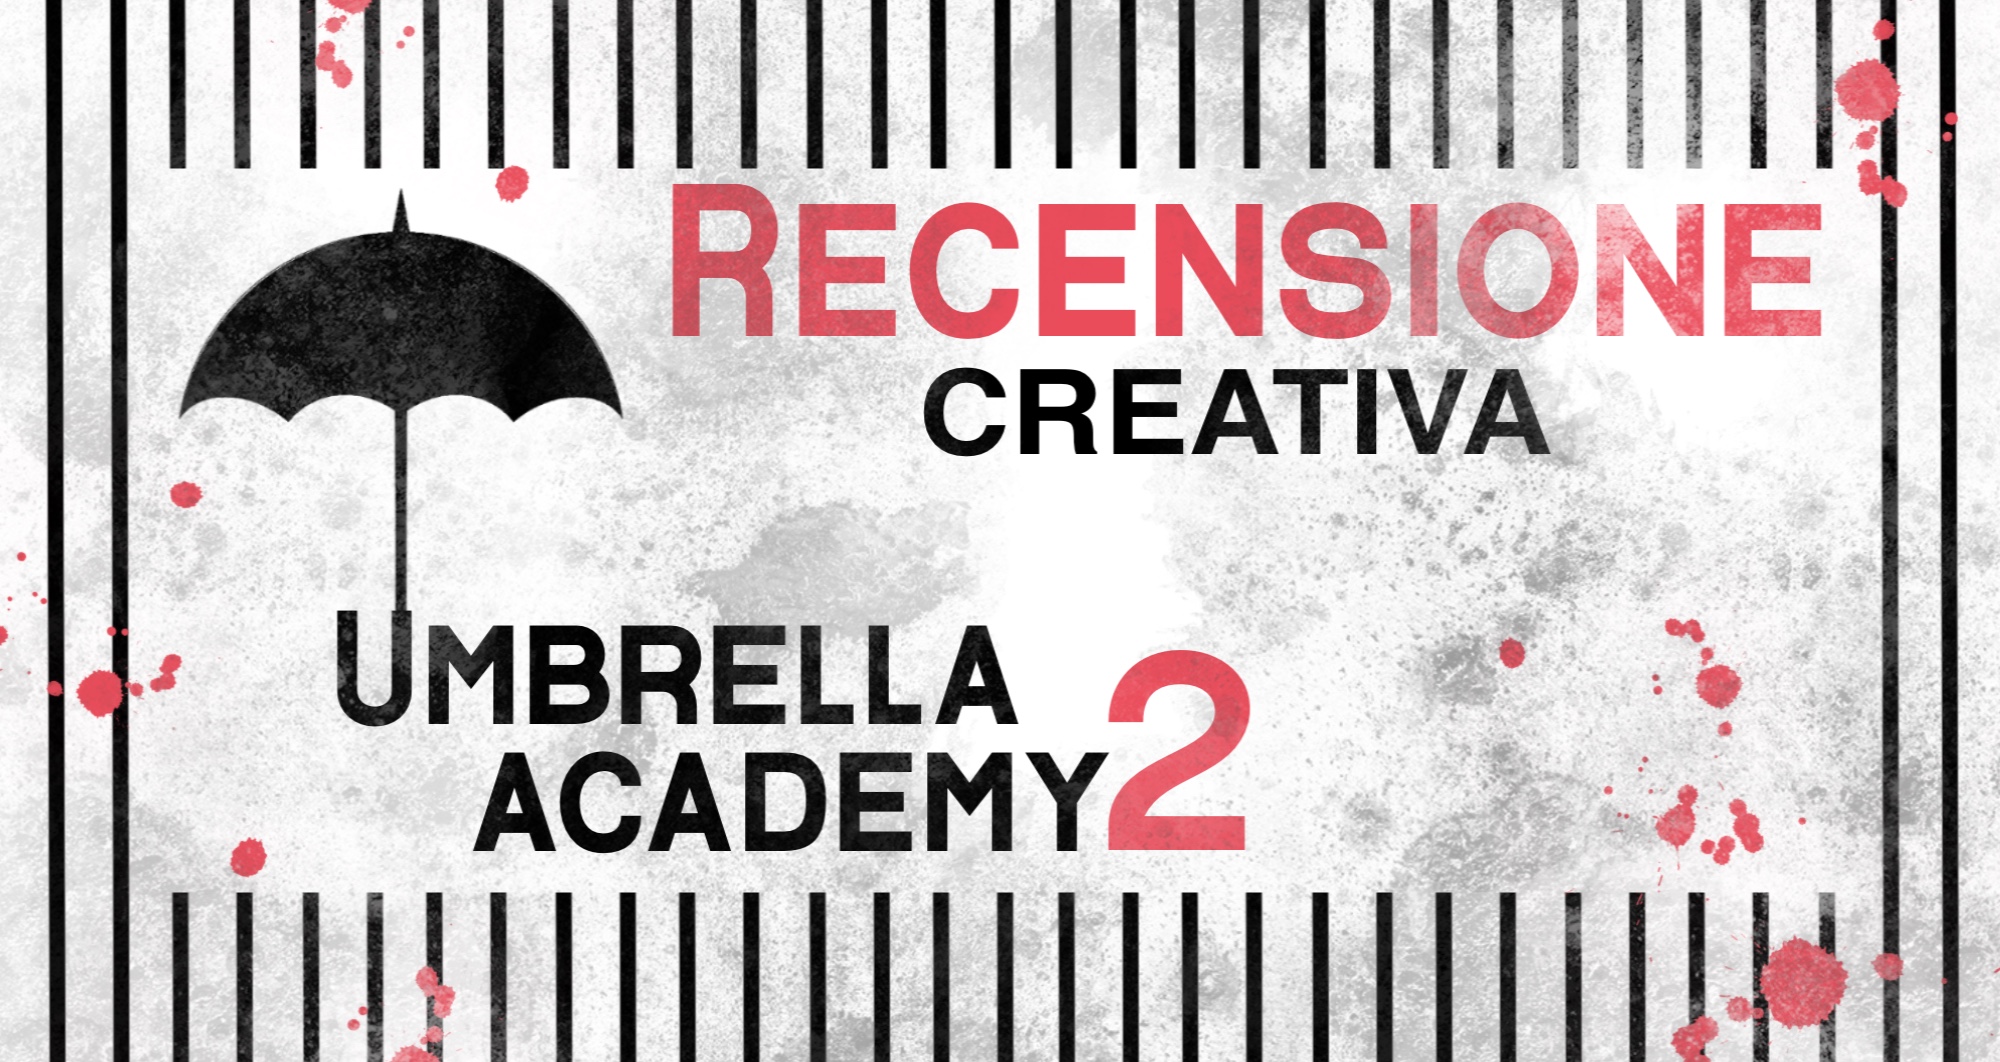 Serie TV: The Umbrella Academy, Stagione 2 – Recensione Creativa